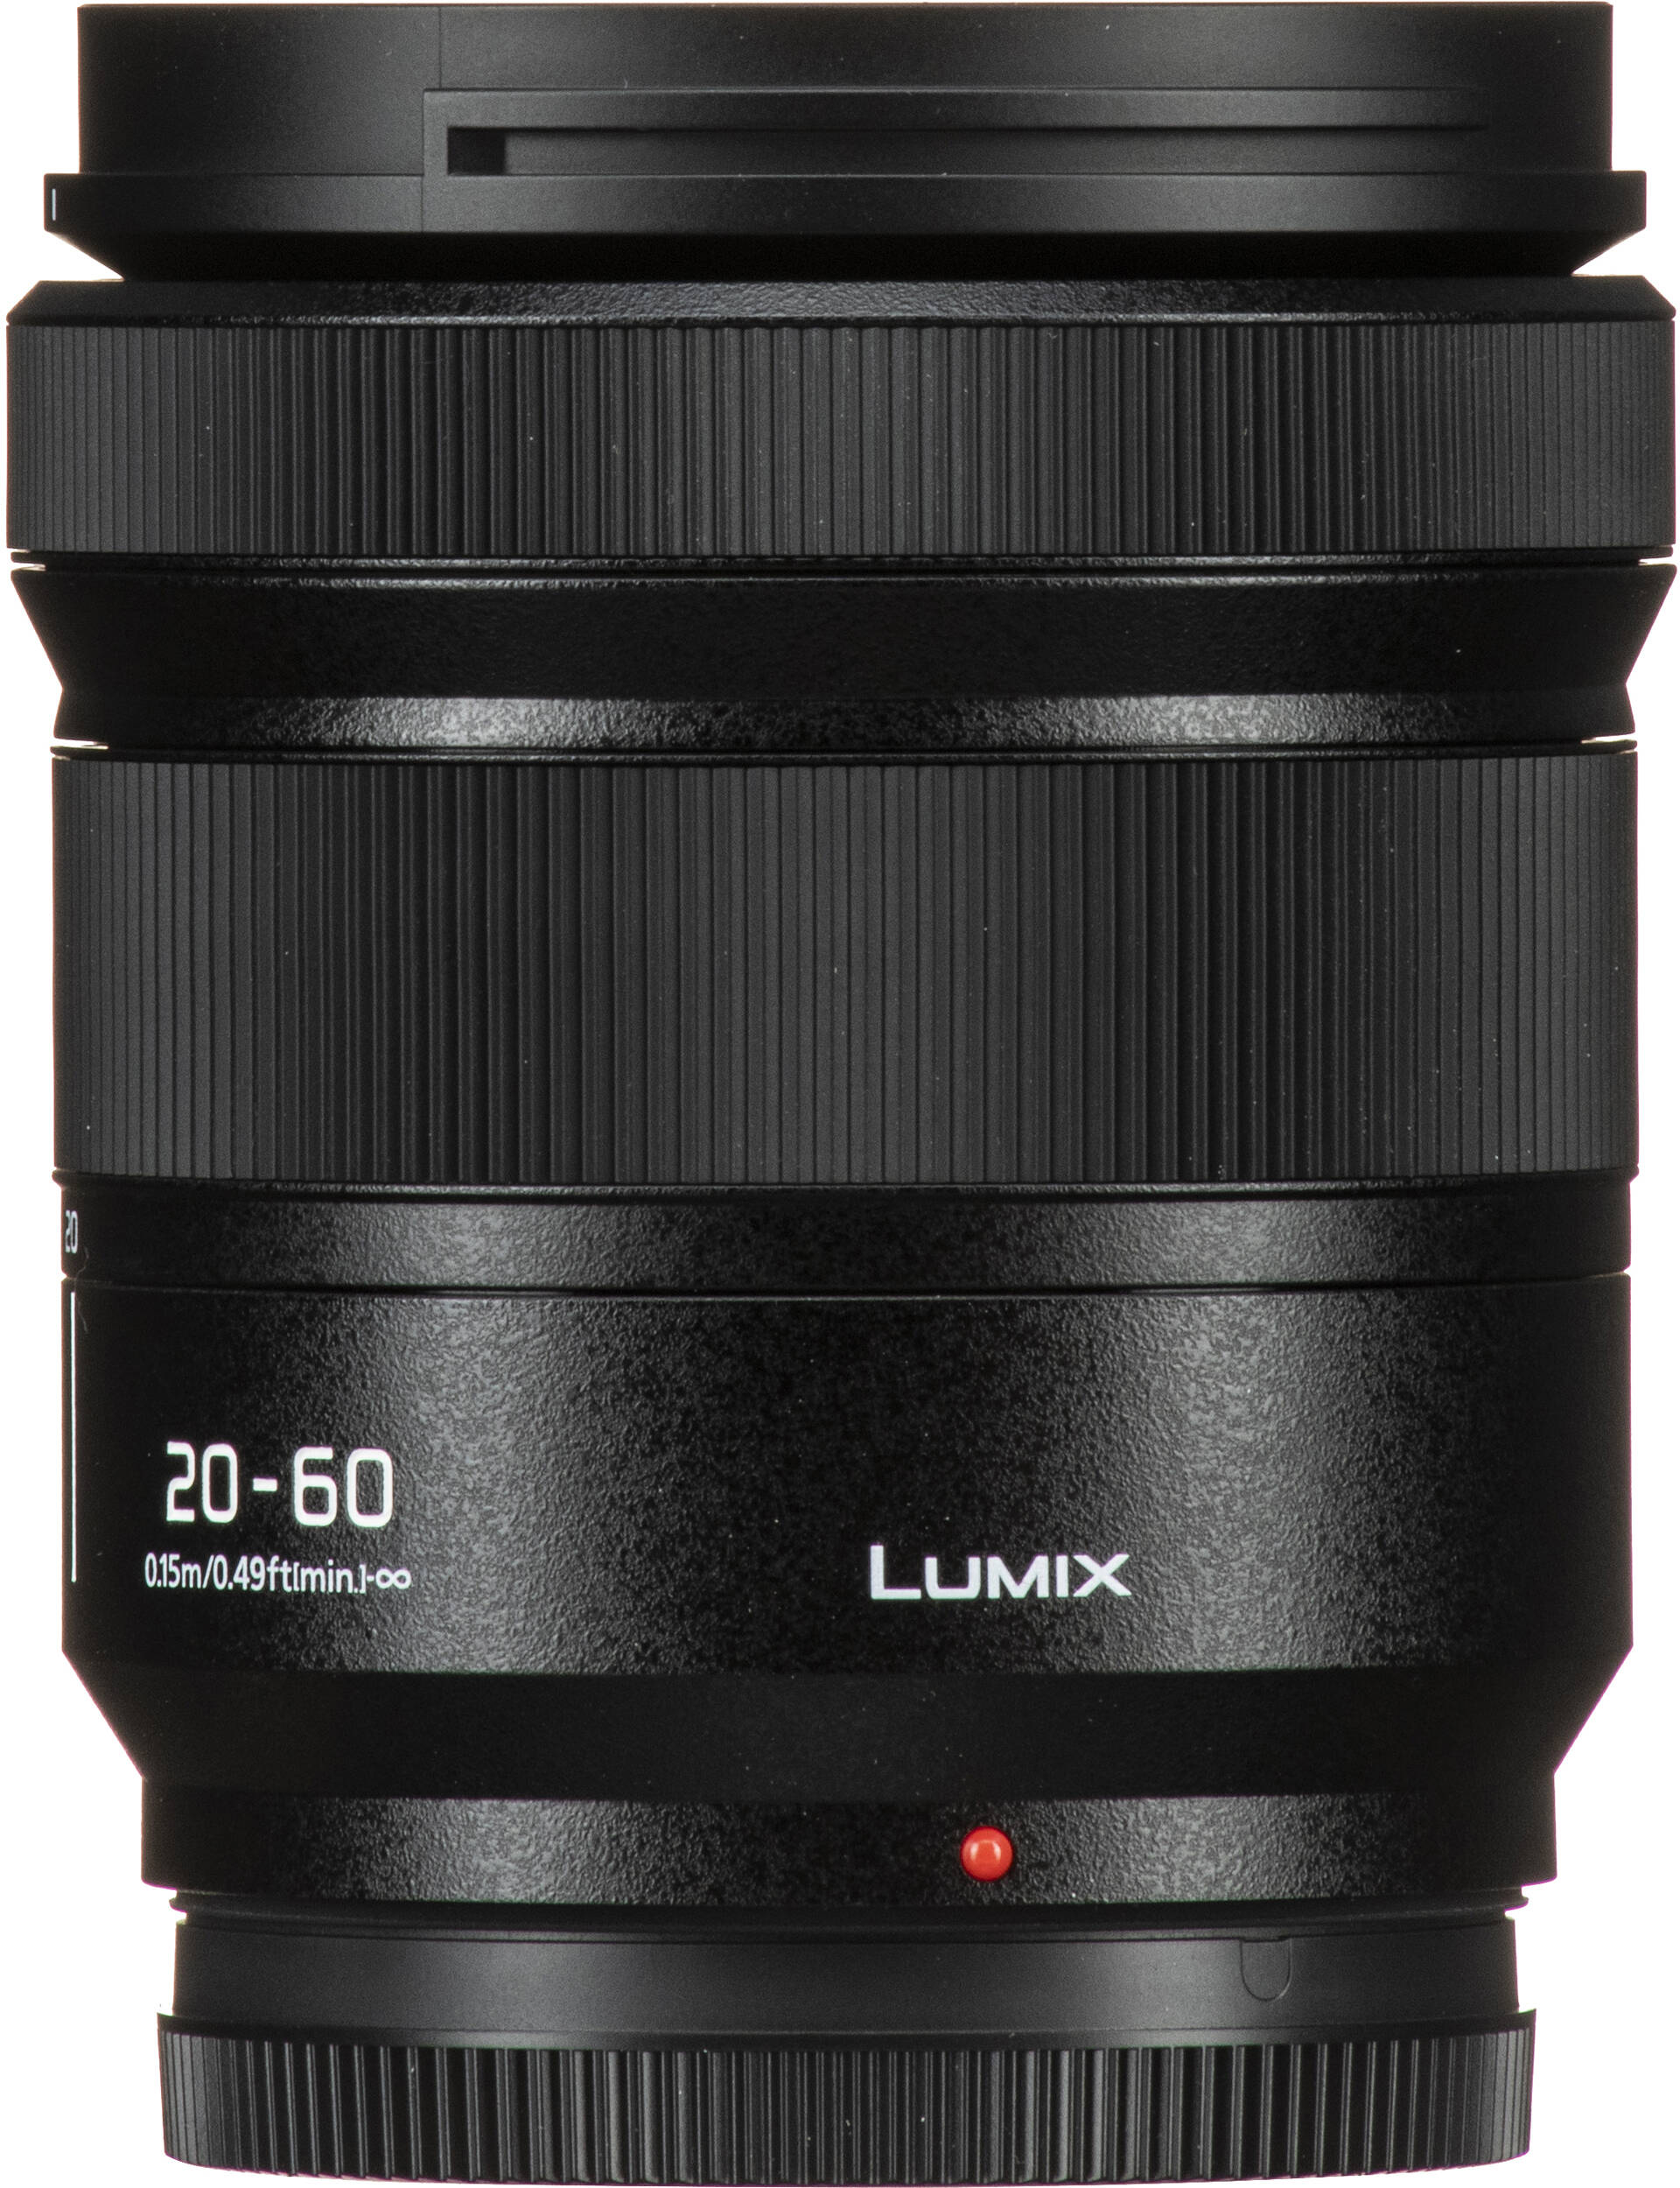 Фотоапарат Panasonic Lumix DC-S9 + 20-60mm f/3.5-5.6 Jet Black (DC-S9KE-K)фото18